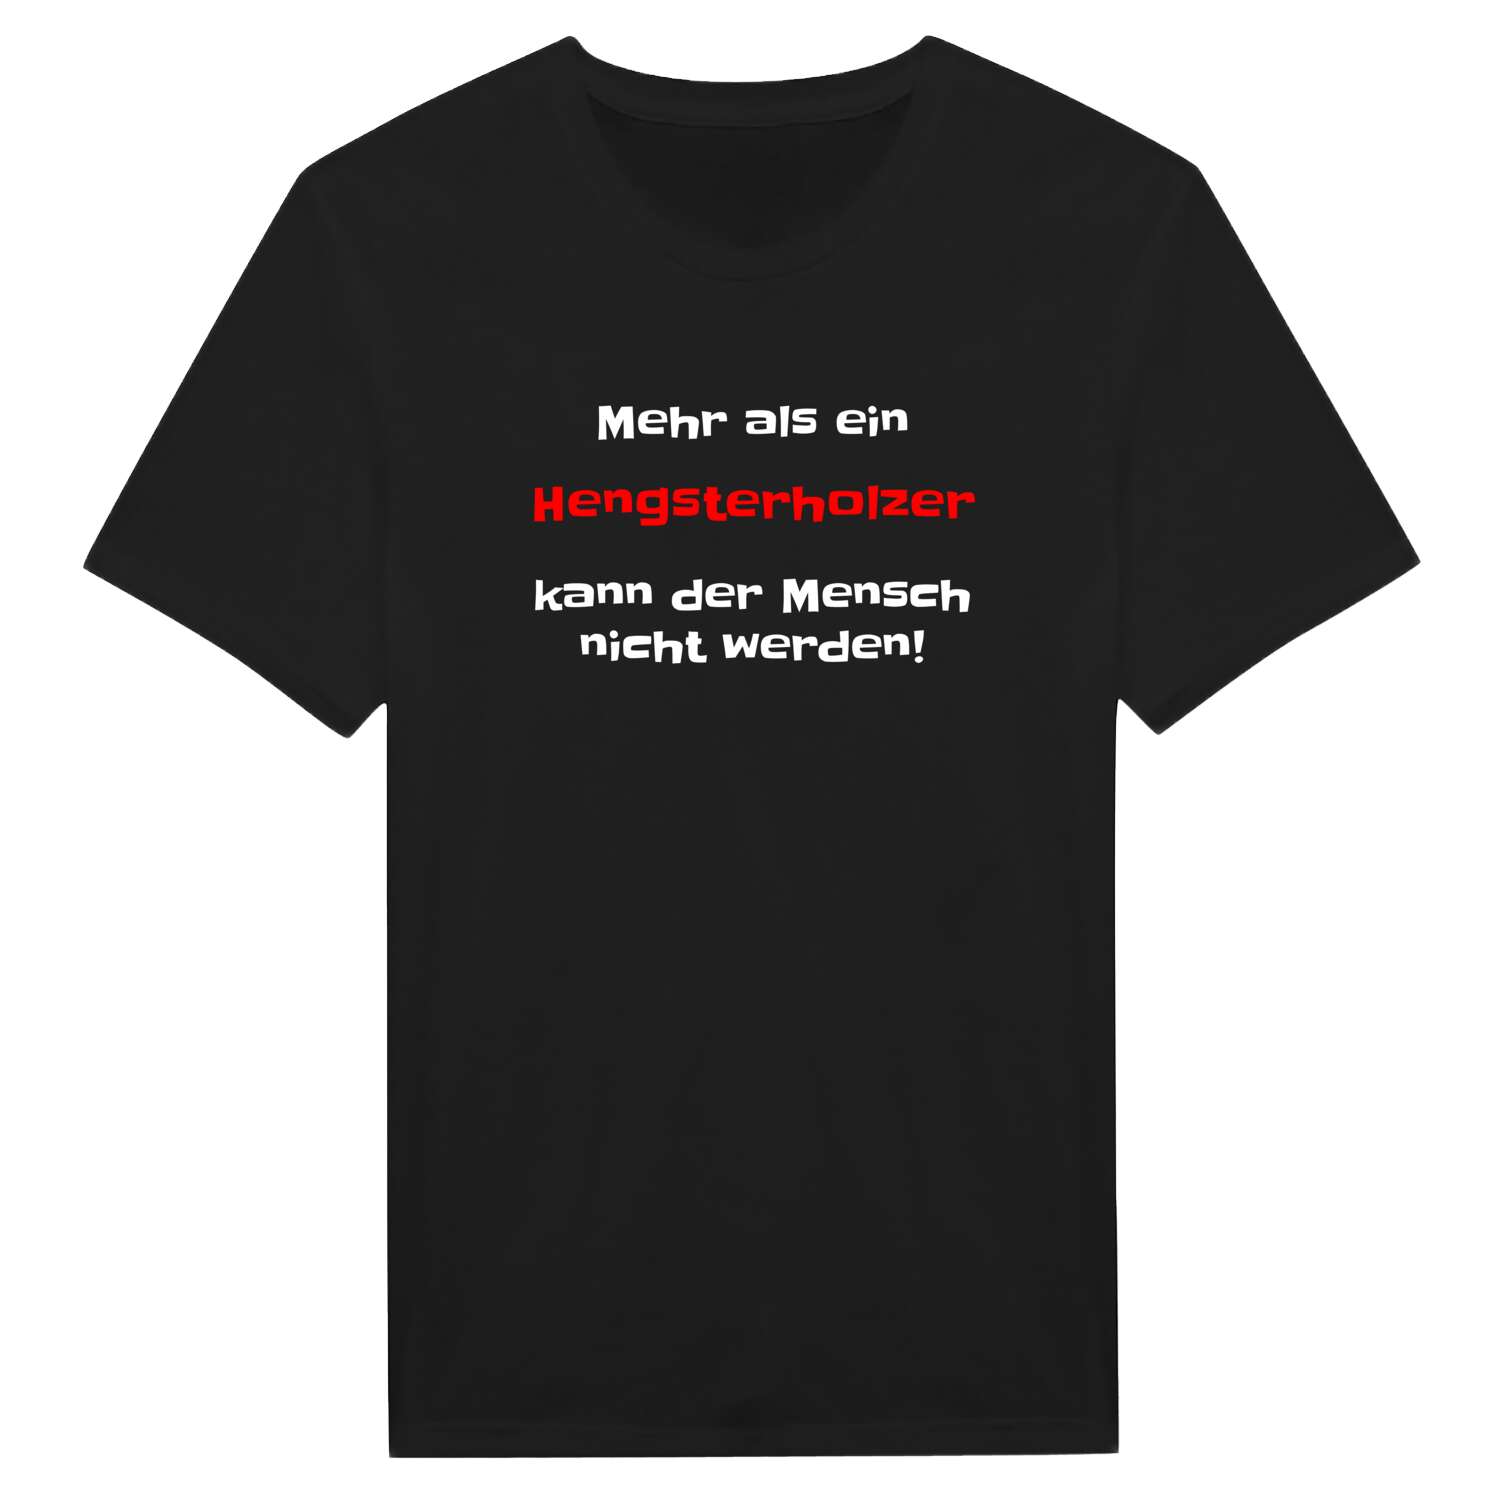 Hengsterholz T-Shirt »Mehr als ein«